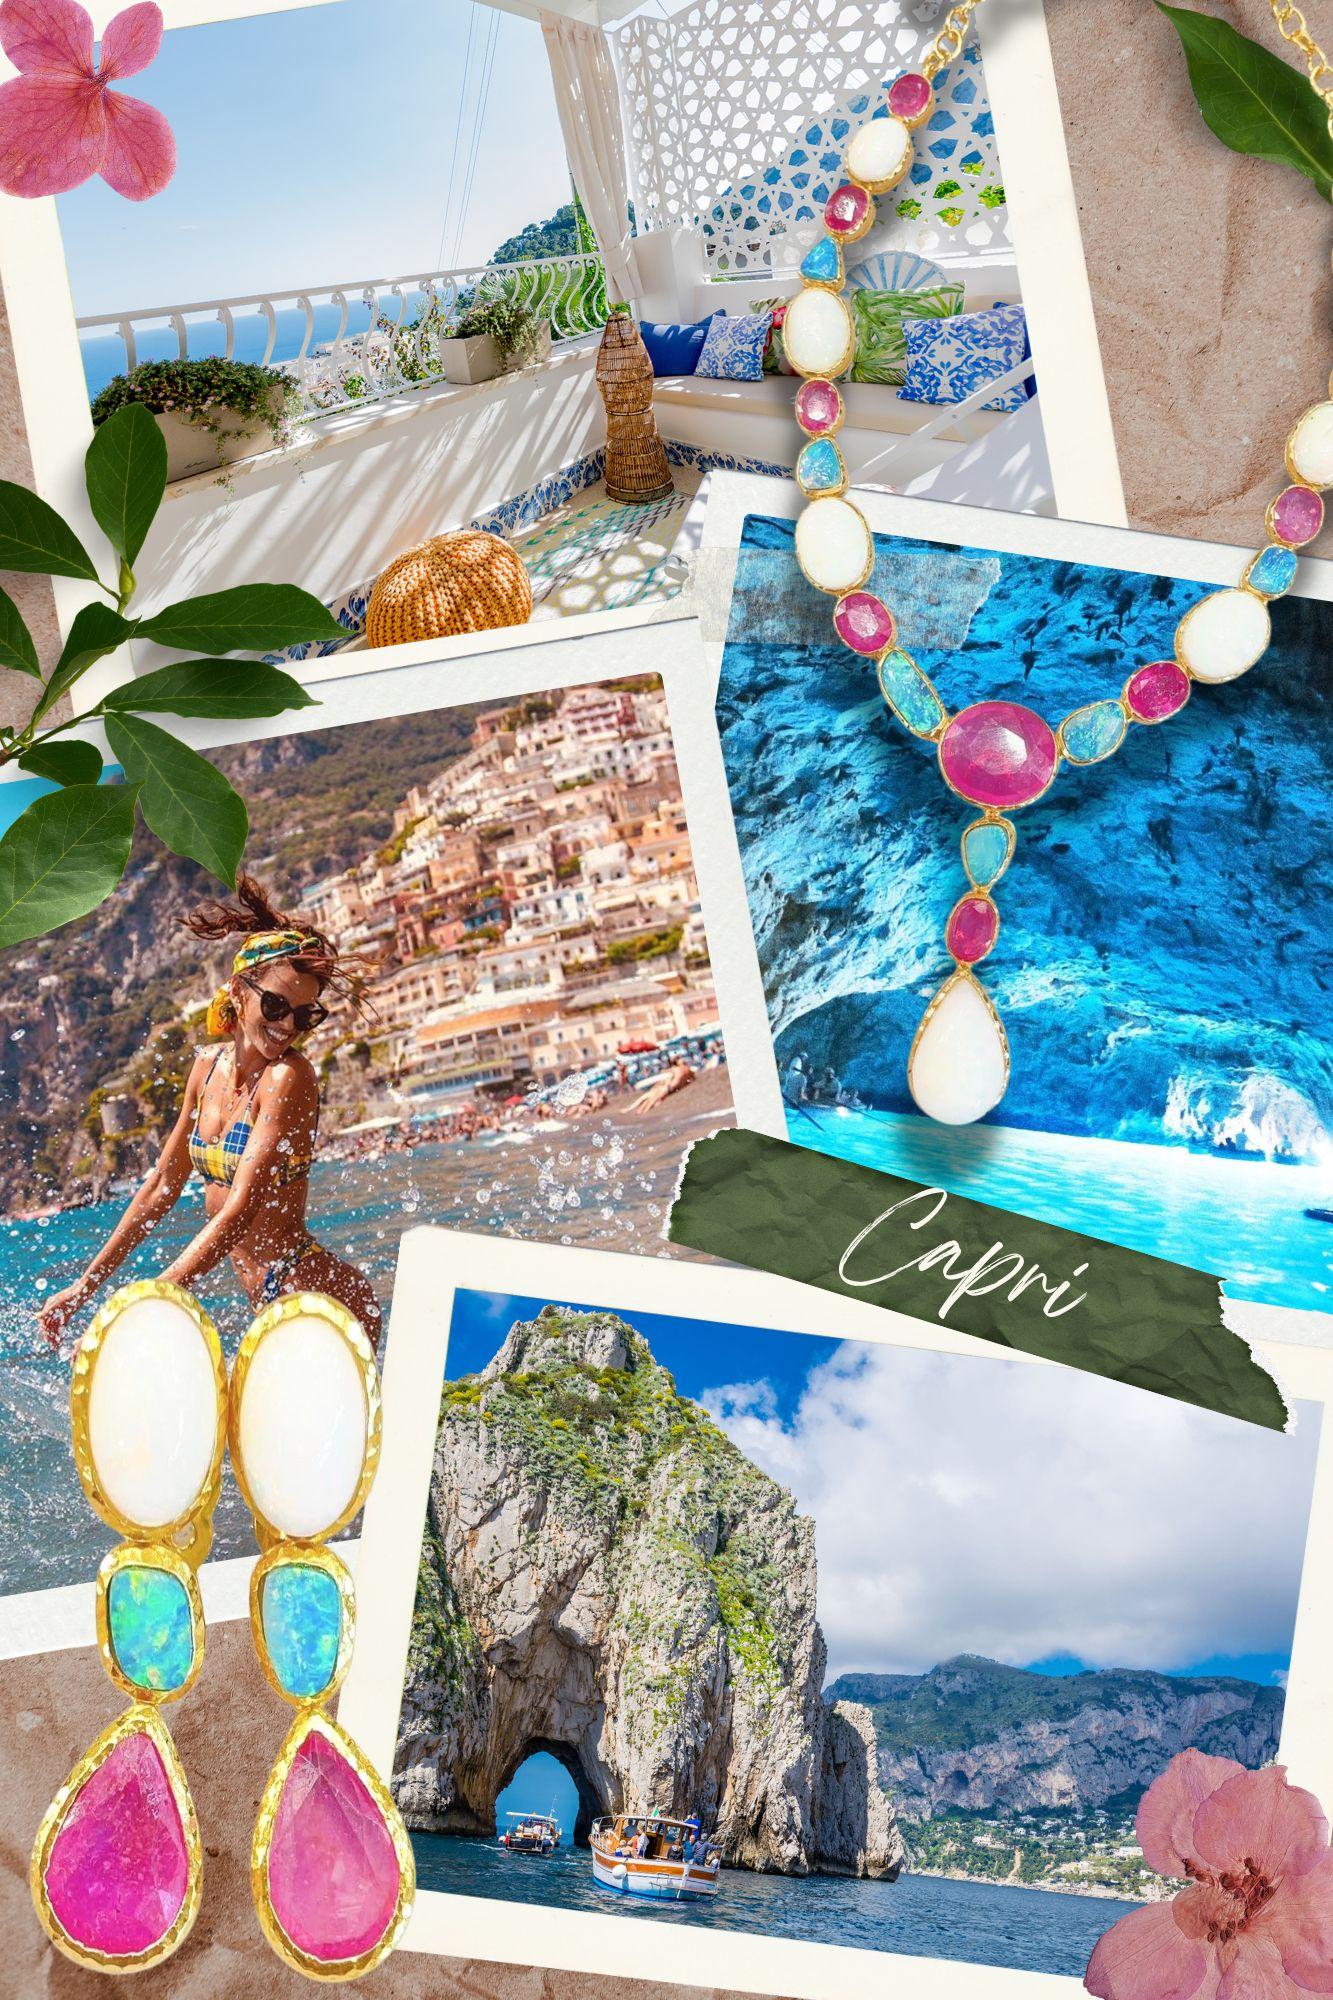 Cabochon Bochic “Capri” Ruby, Emerald & Sapphire Necklace Set In 18K Gold & Silver  For Sale